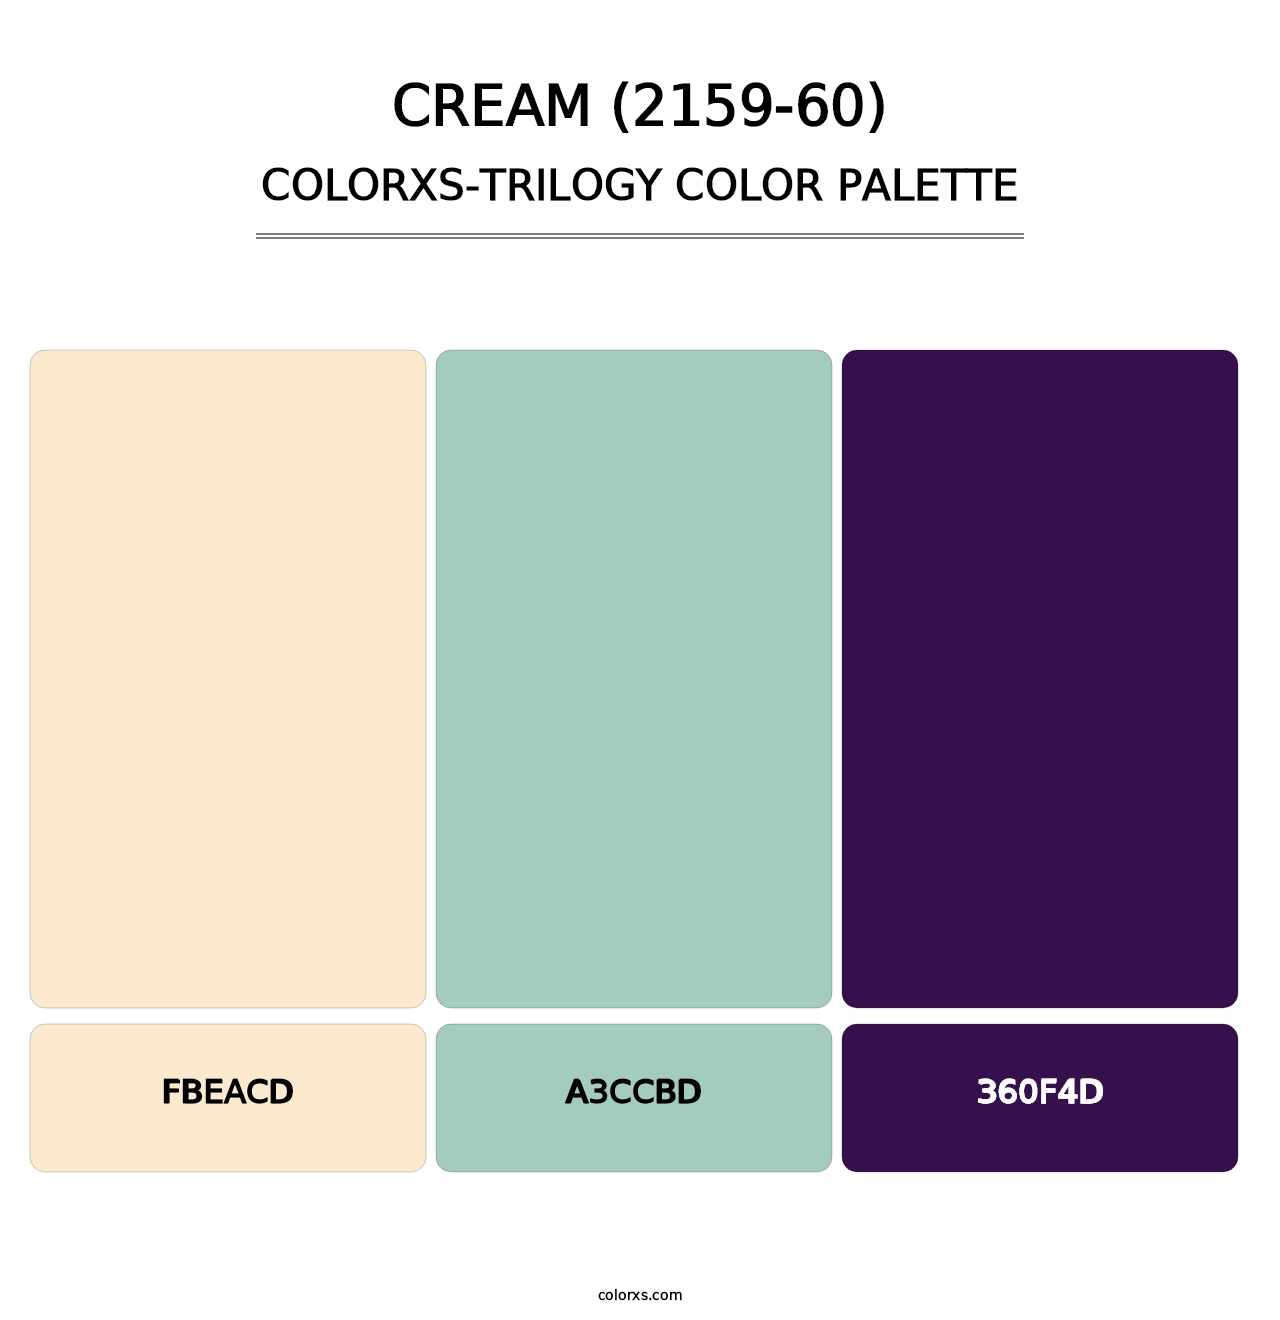 Cream (2159-60) - Colorxs Trilogy Palette